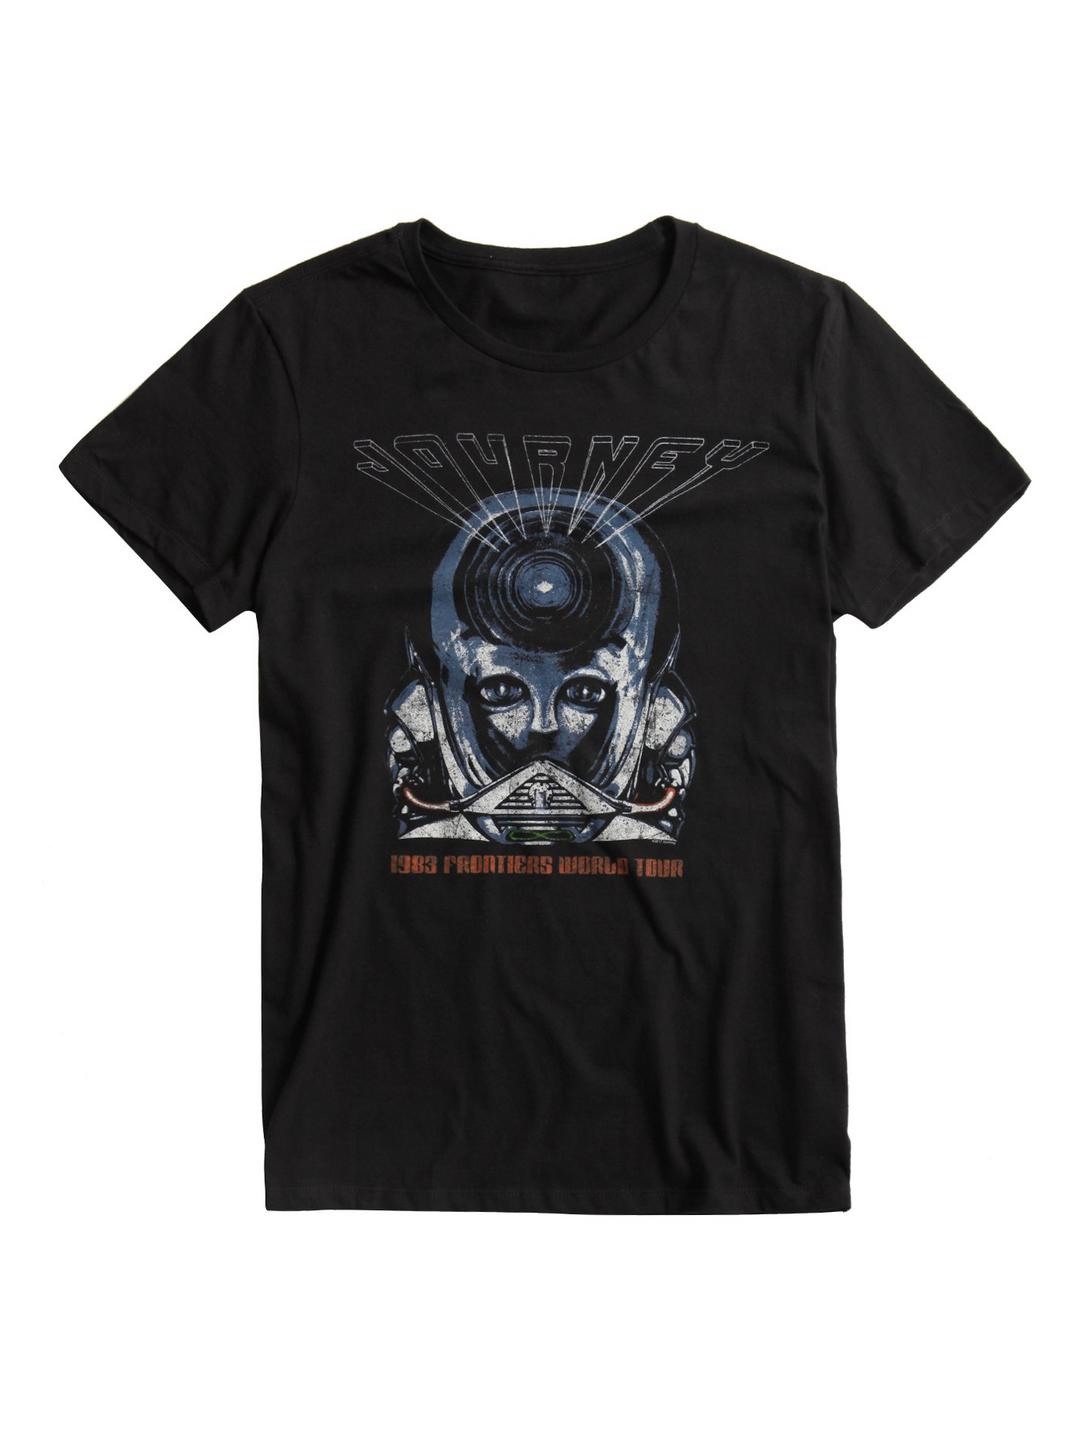 Journey 1983 Frontiers World Tour T-Shirt, BLACK, hi-res